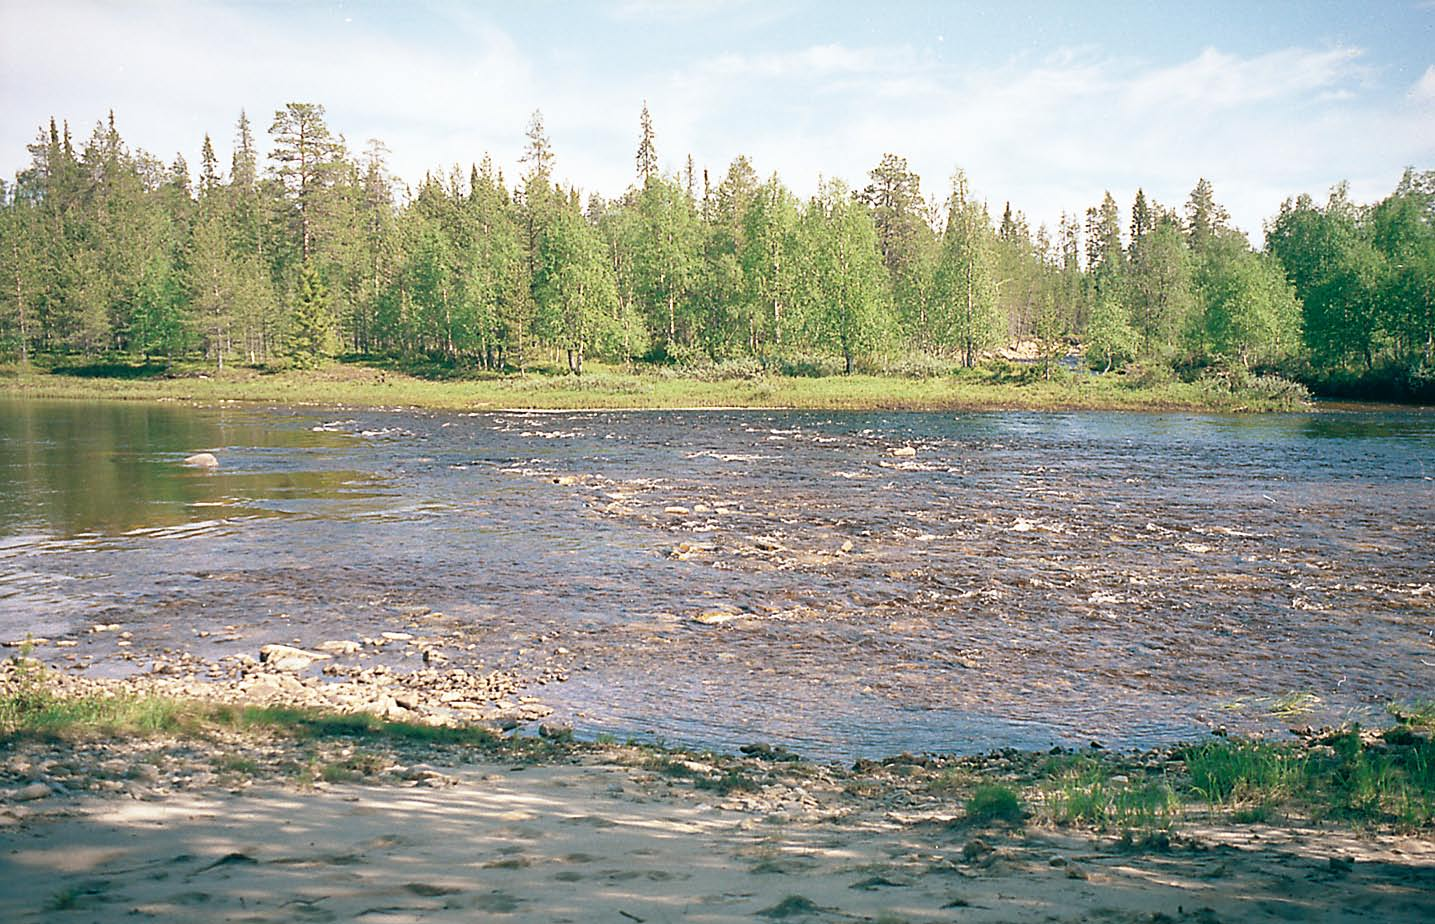 niemekkeillä ja karikoilla. Muutoinkin Värriöjoen kasvillisuudesta paljaat soraikko- ja kivikkopohjat muokattiin varsin perusteellisesti ja näin saatiin vaihtelua joen syvyys- ja virtausolosuhteisiin.